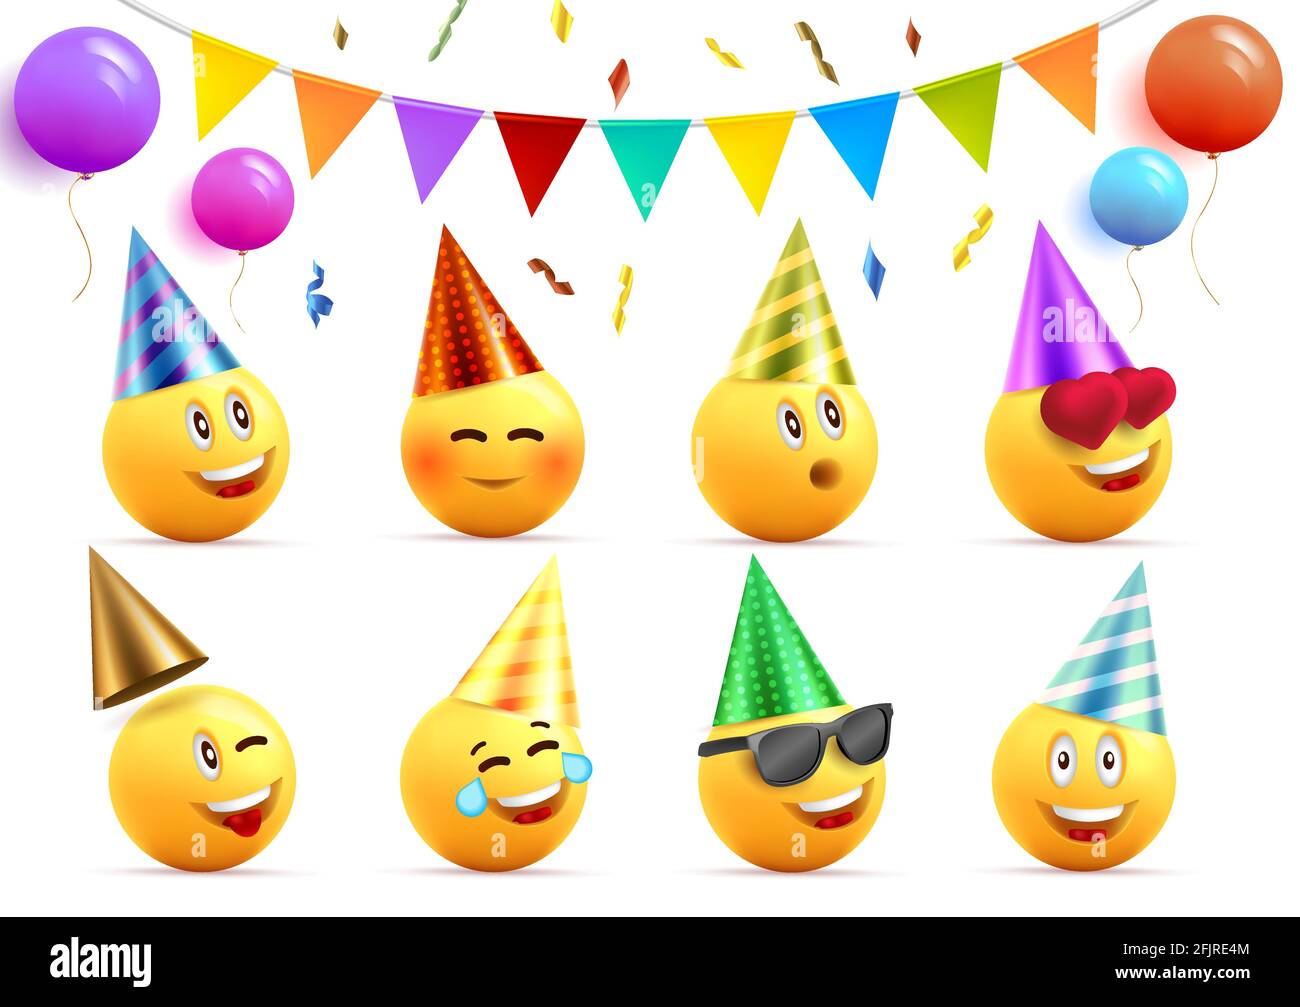 Les éléments graphiques d'anniversaire définissent des visages souriants jaunes dans des chapeaux coniques avec des expressions heureuses et des ballons ronds et des drapeaux de fête avec des confettis, isolat Illustration de Vecteur